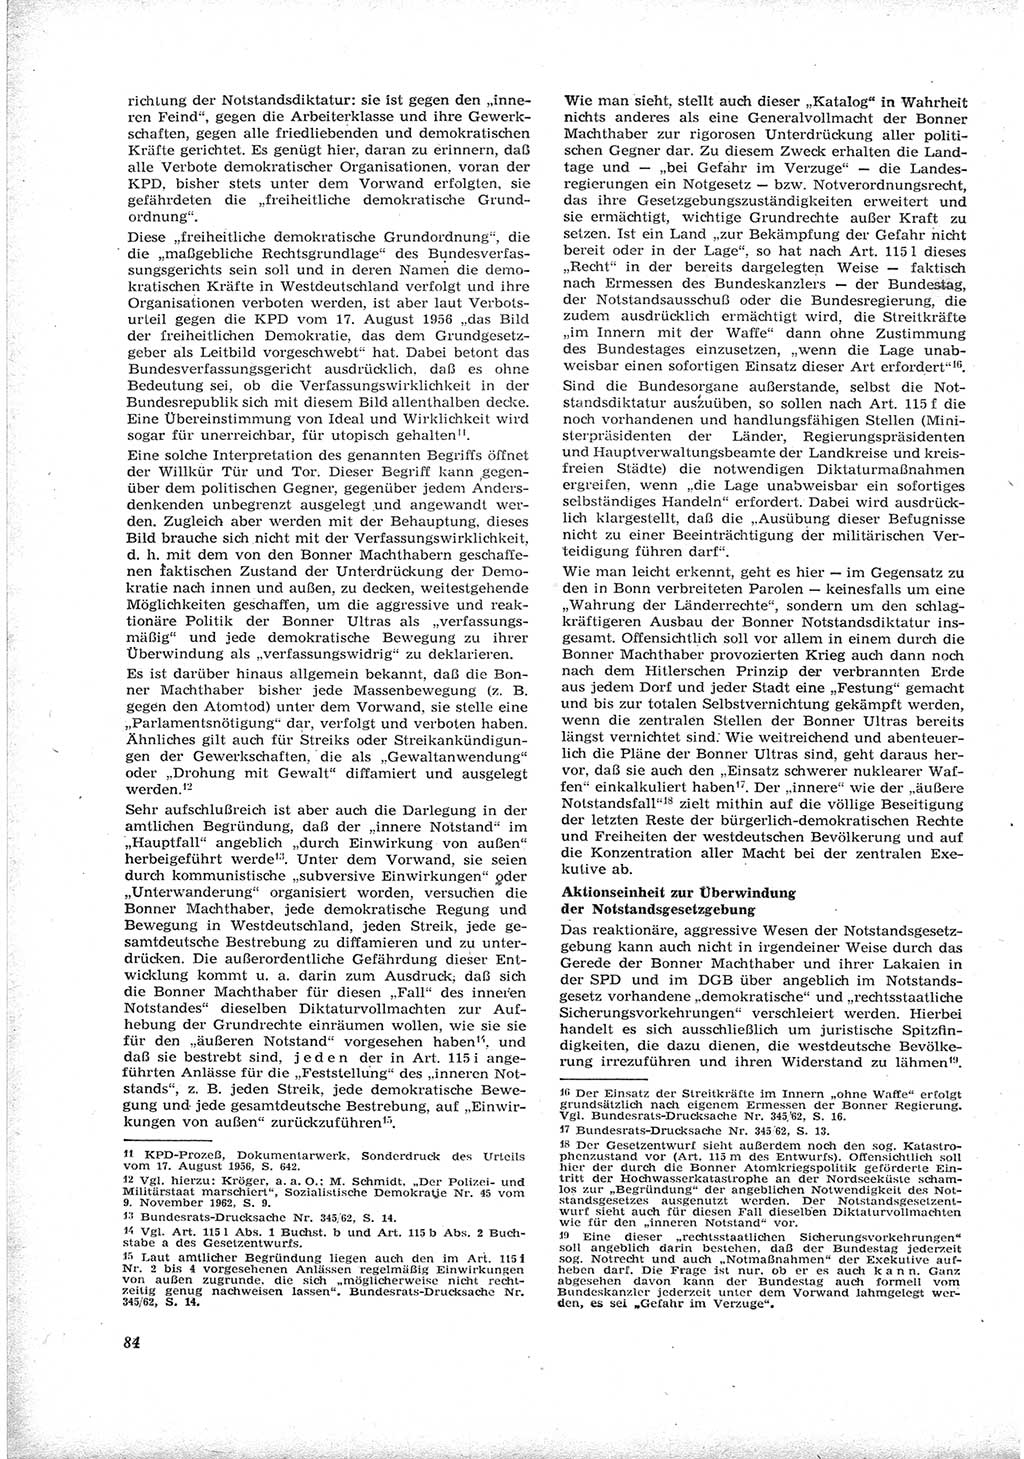 Neue Justiz (NJ), Zeitschrift für Recht und Rechtswissenschaft [Deutsche Demokratische Republik (DDR)], 17. Jahrgang 1963, Seite 84 (NJ DDR 1963, S. 84)